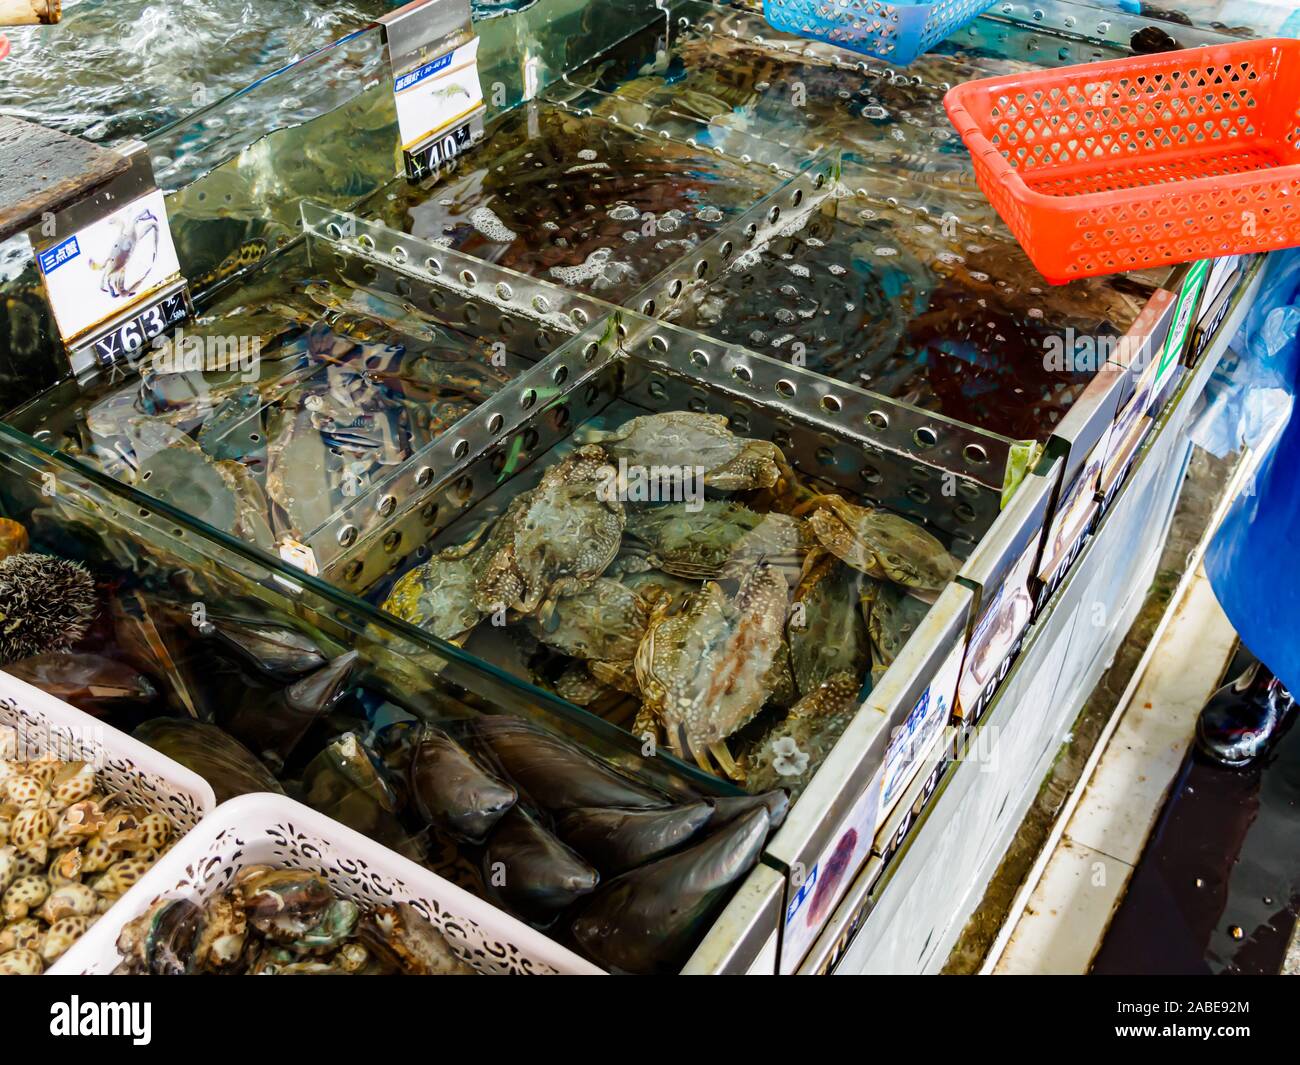 HAINAN, CHINA - 3 Mar 2019 - Tanks mit frischem Leben Meeresfrüchte (Krebse, Muscheln, Schalentiere) für den Verkauf zu einem Fisch Groß- und Einzelhandel Zentrum in Hainan, China Stockfoto